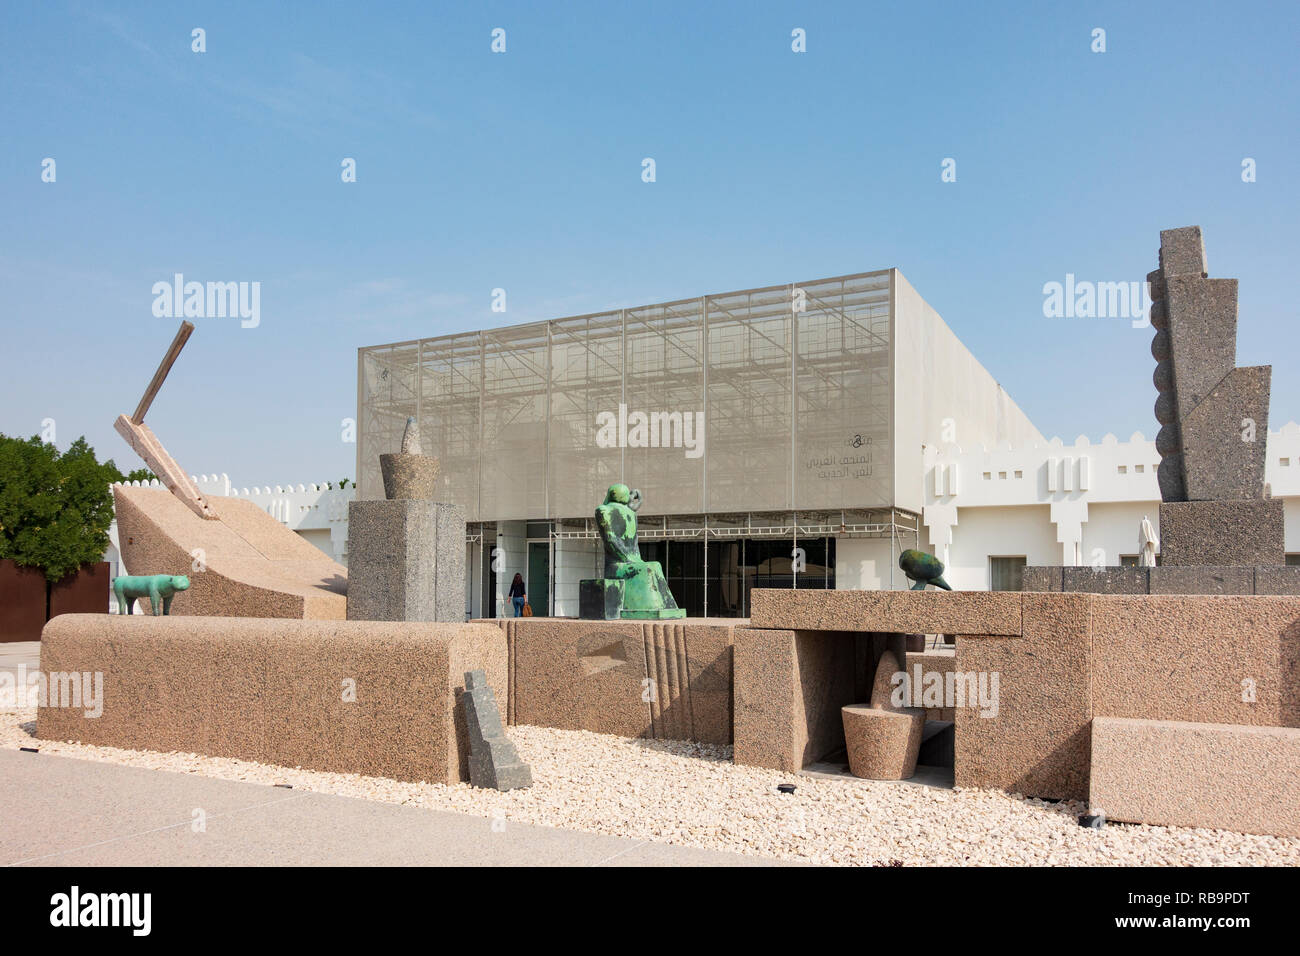 Skulptur das Schiff Zone von Adam an Henein Mathaf: Arabische Museum der Modernen Kunst, Doha, Katar. Stockfoto